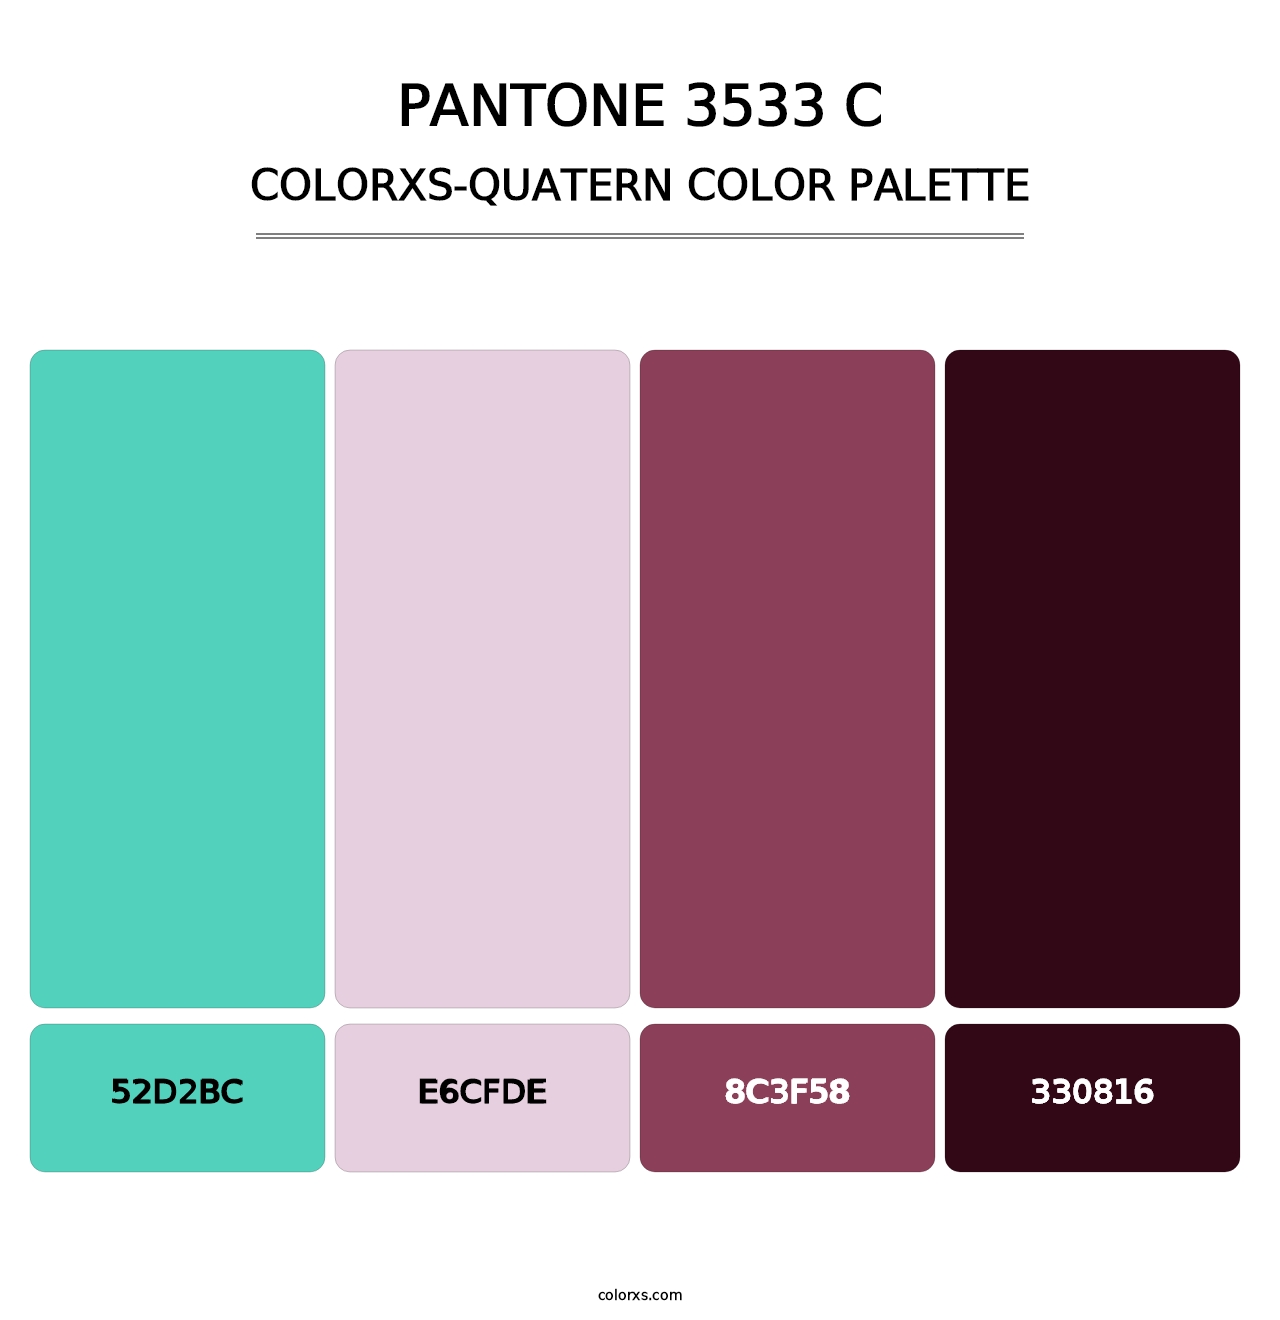 PANTONE 3533 C - Colorxs Quatern Palette